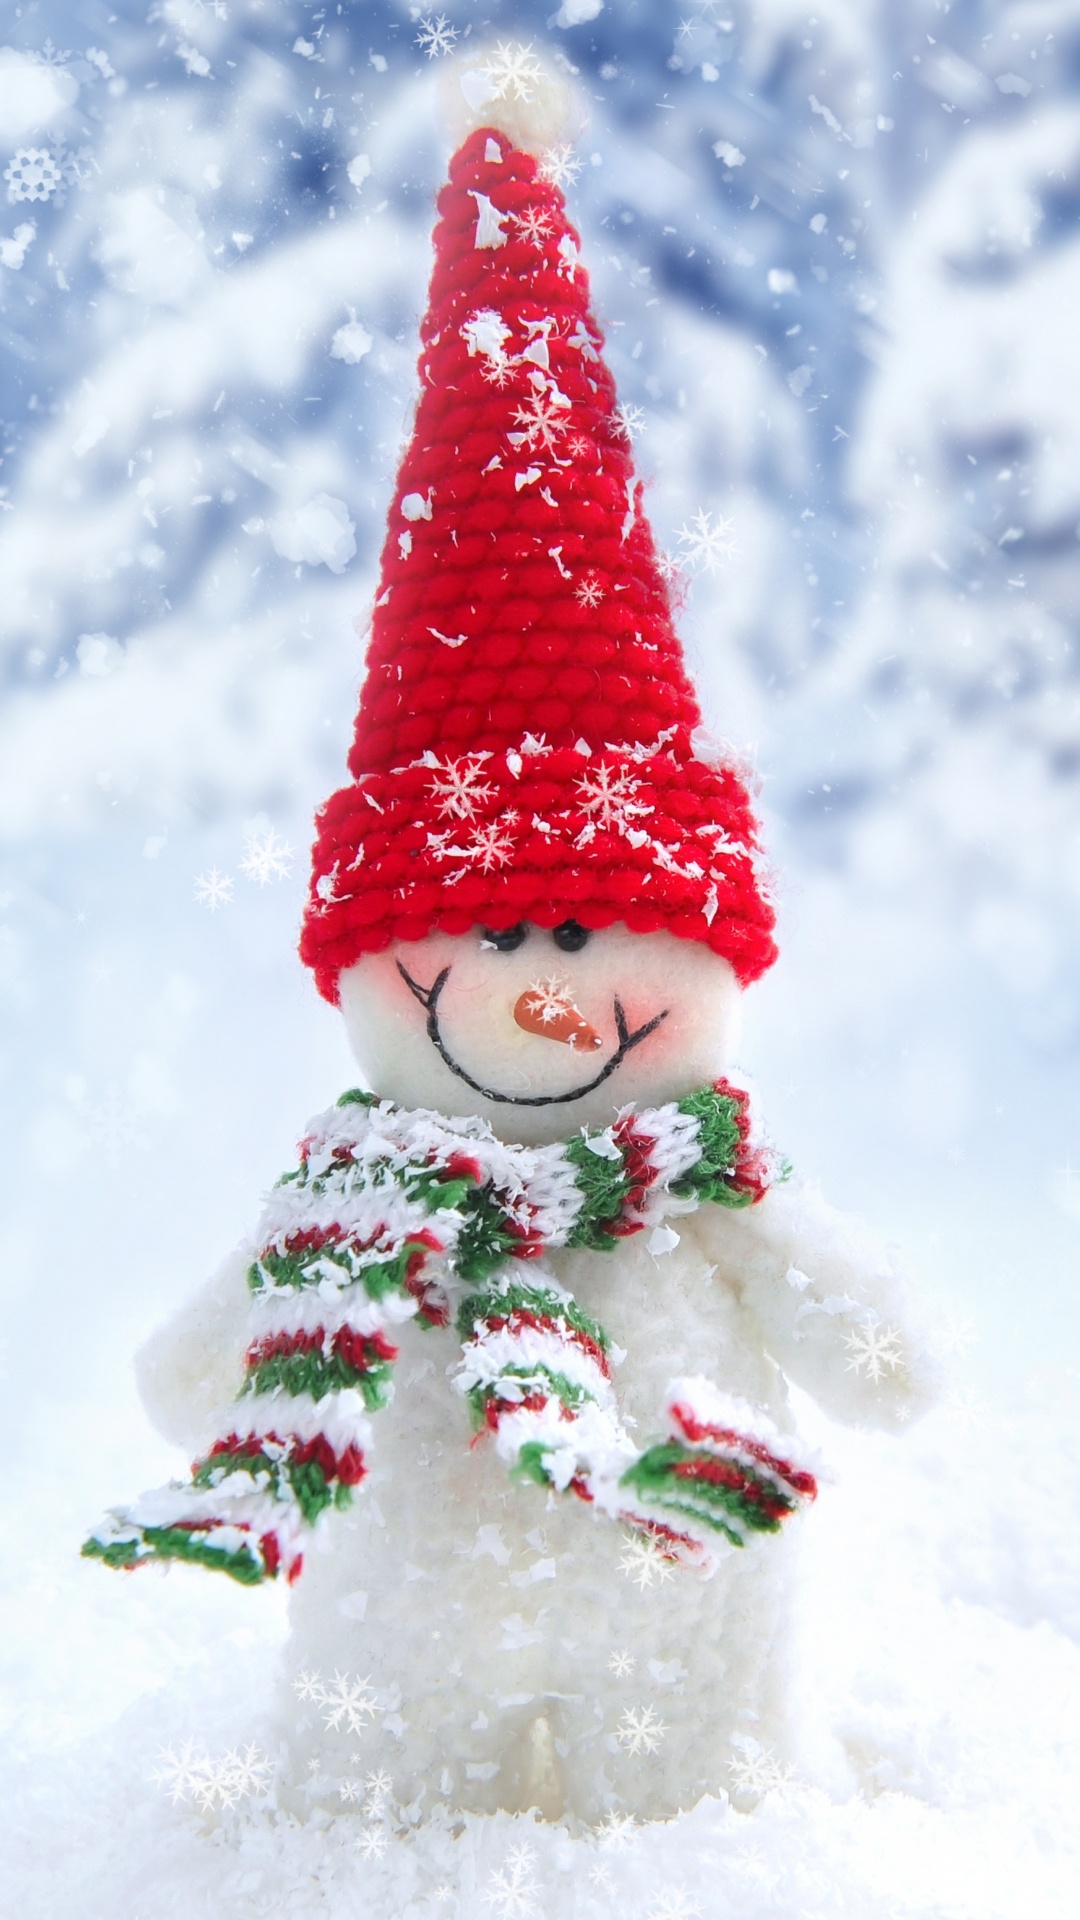 雪人, 冬天, 圣诞树, 圣诞节, 圣诞节的装饰品 壁纸 1080x1920 允许